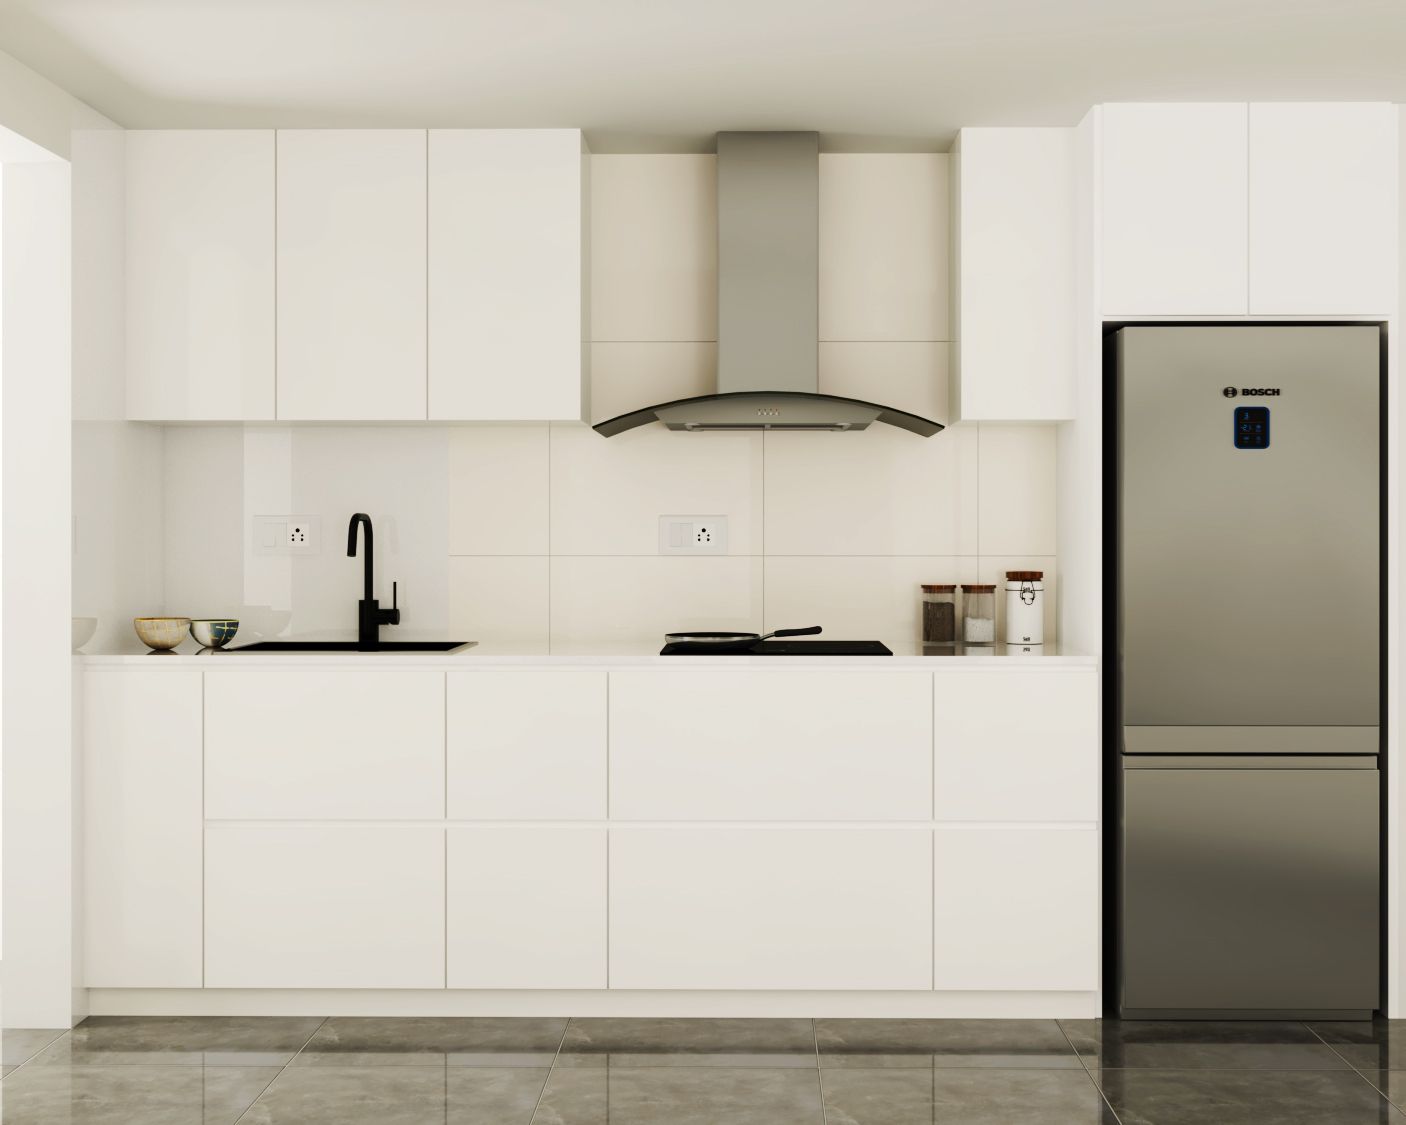 Modern Kitchen Cabinet Design In White